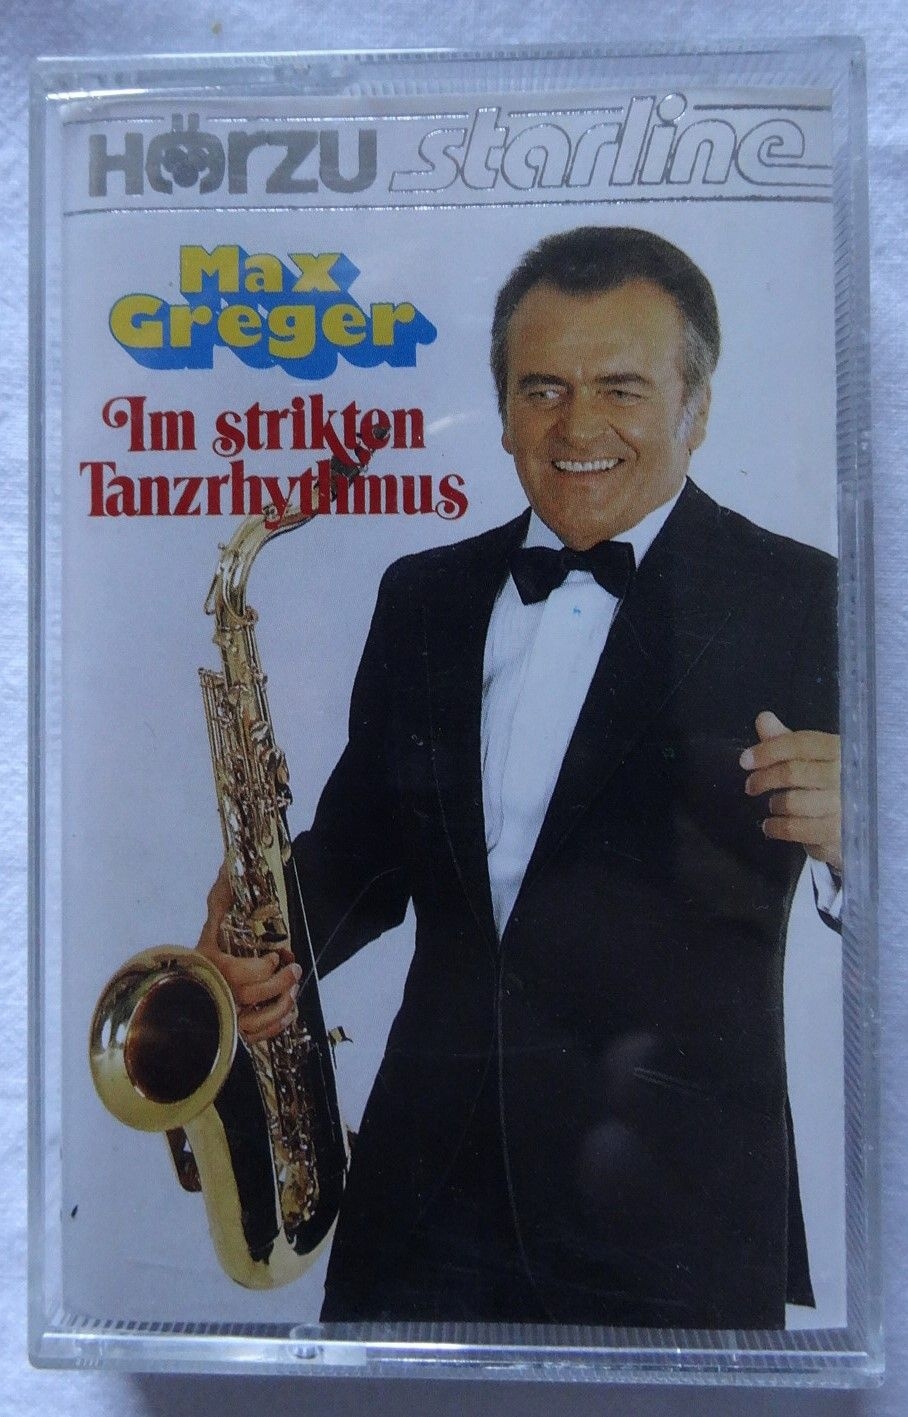 MC Max Greger Im strikten Tanzrhythmus 1983/84 Polydor LC 0309 Hörzu Starline Musikkassette Bigband